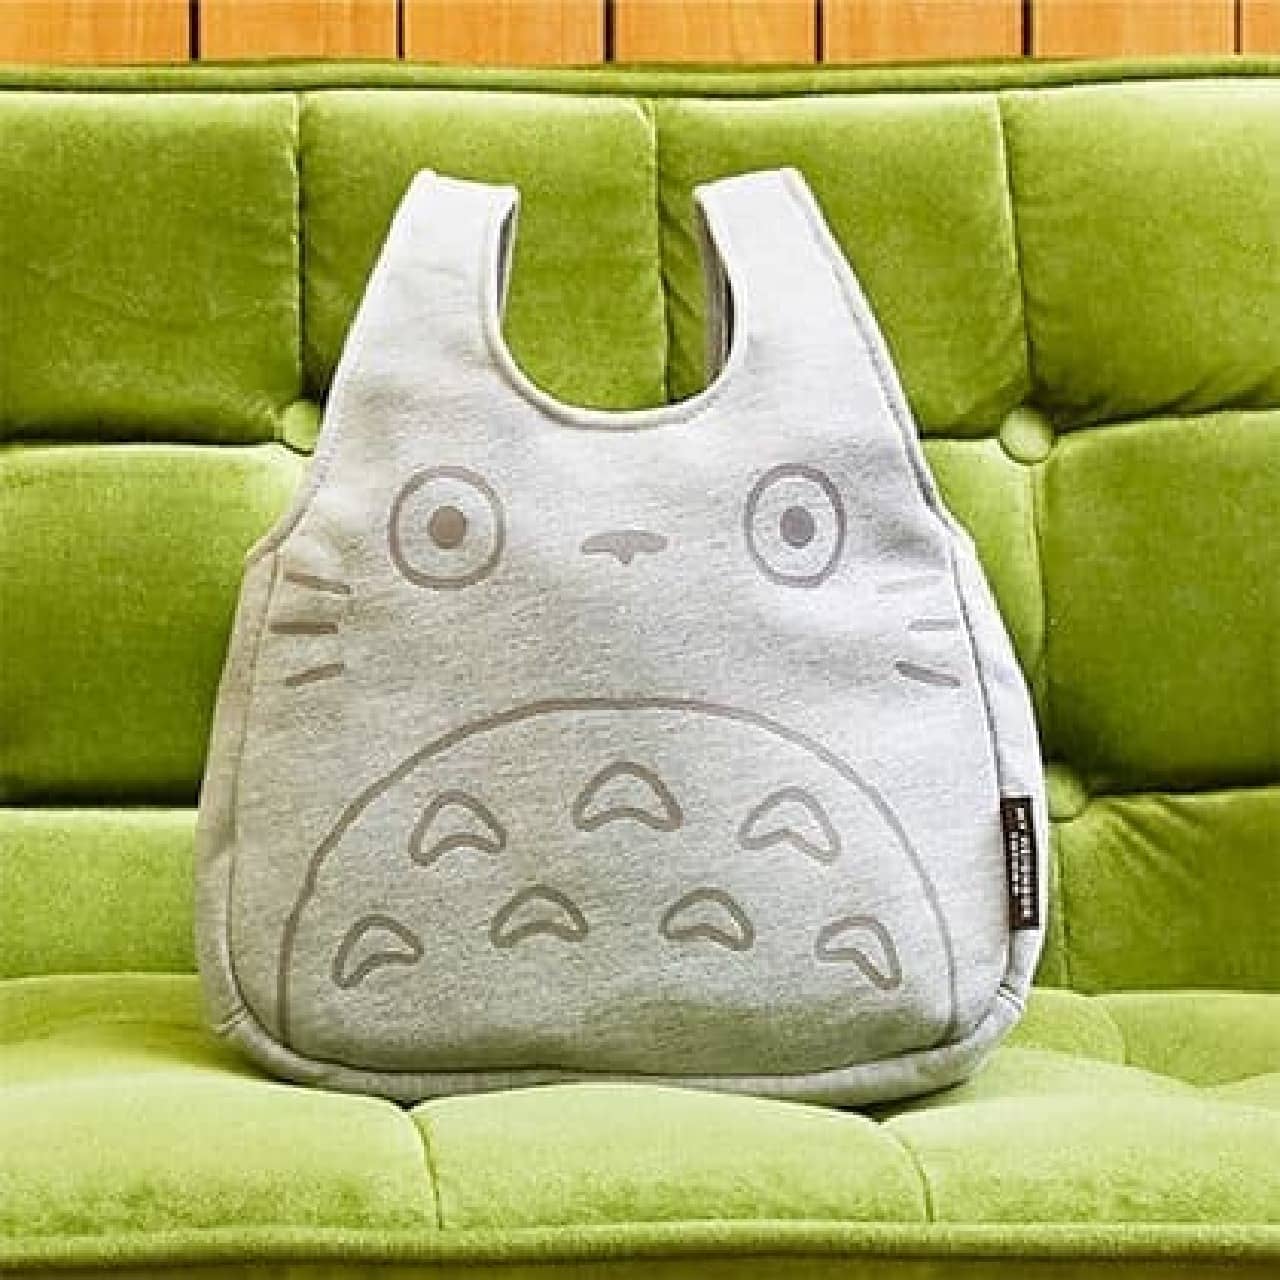 Tote bag "Totoro Tote"